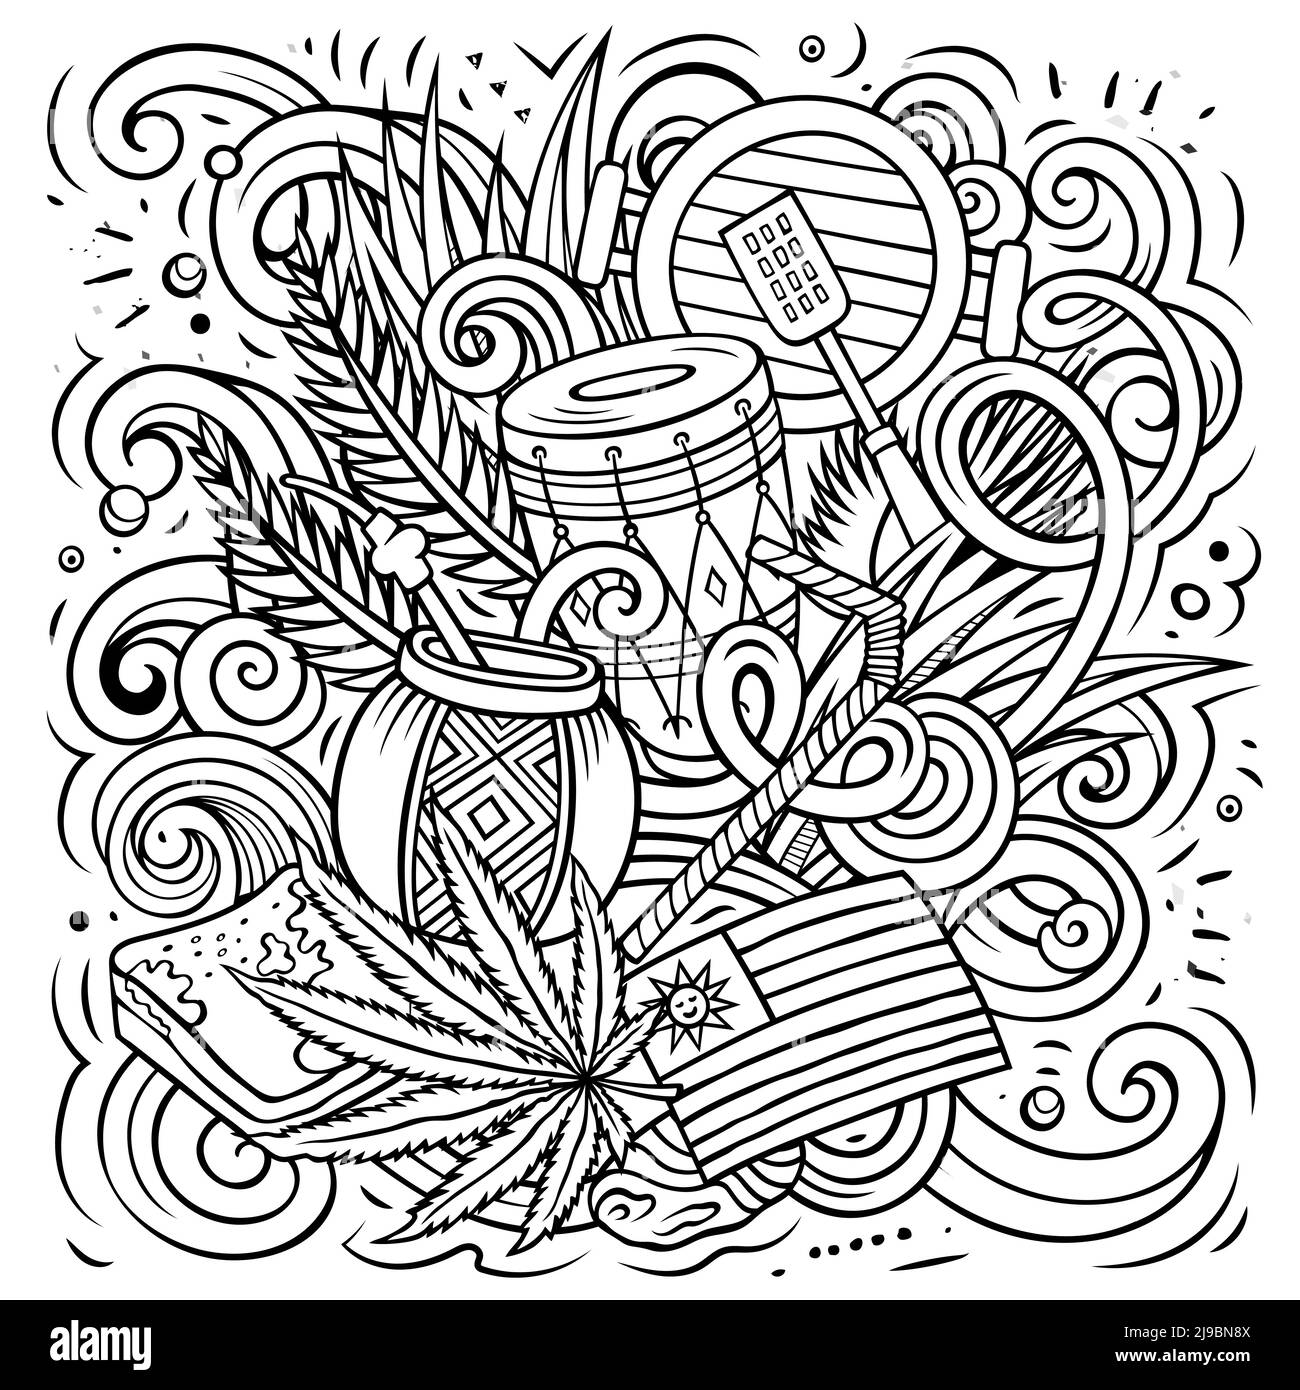 Uruguay hand drawn cartoon doodles illustration. Stock Vector